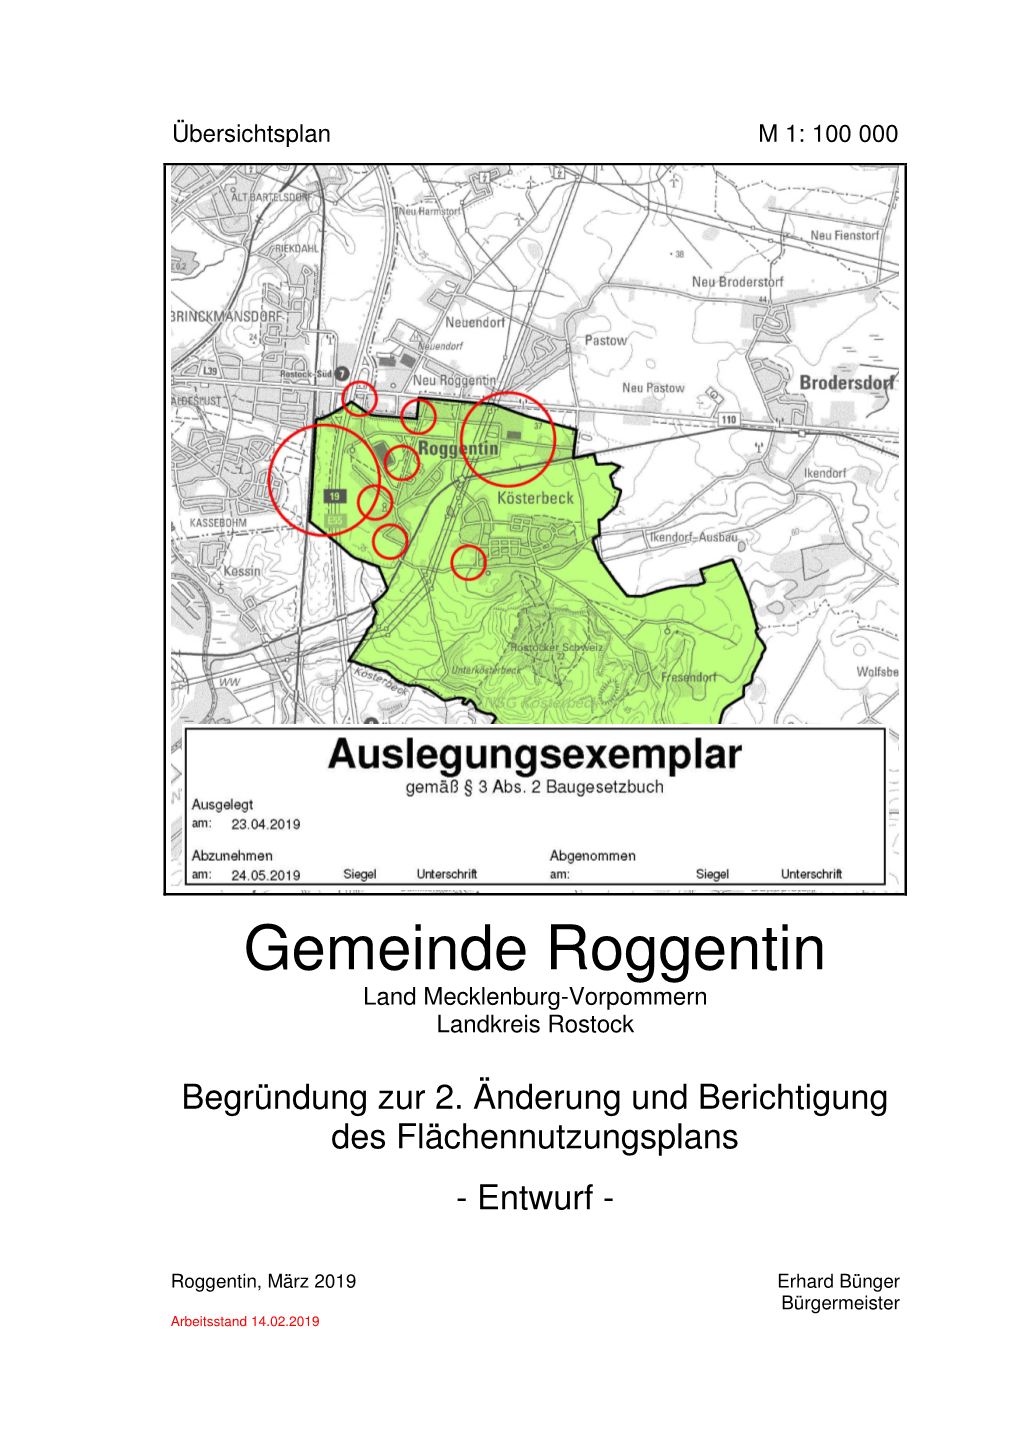 Gemeinde Roggentin Land Mecklenburg-Vorpommern Landkreis Rostock